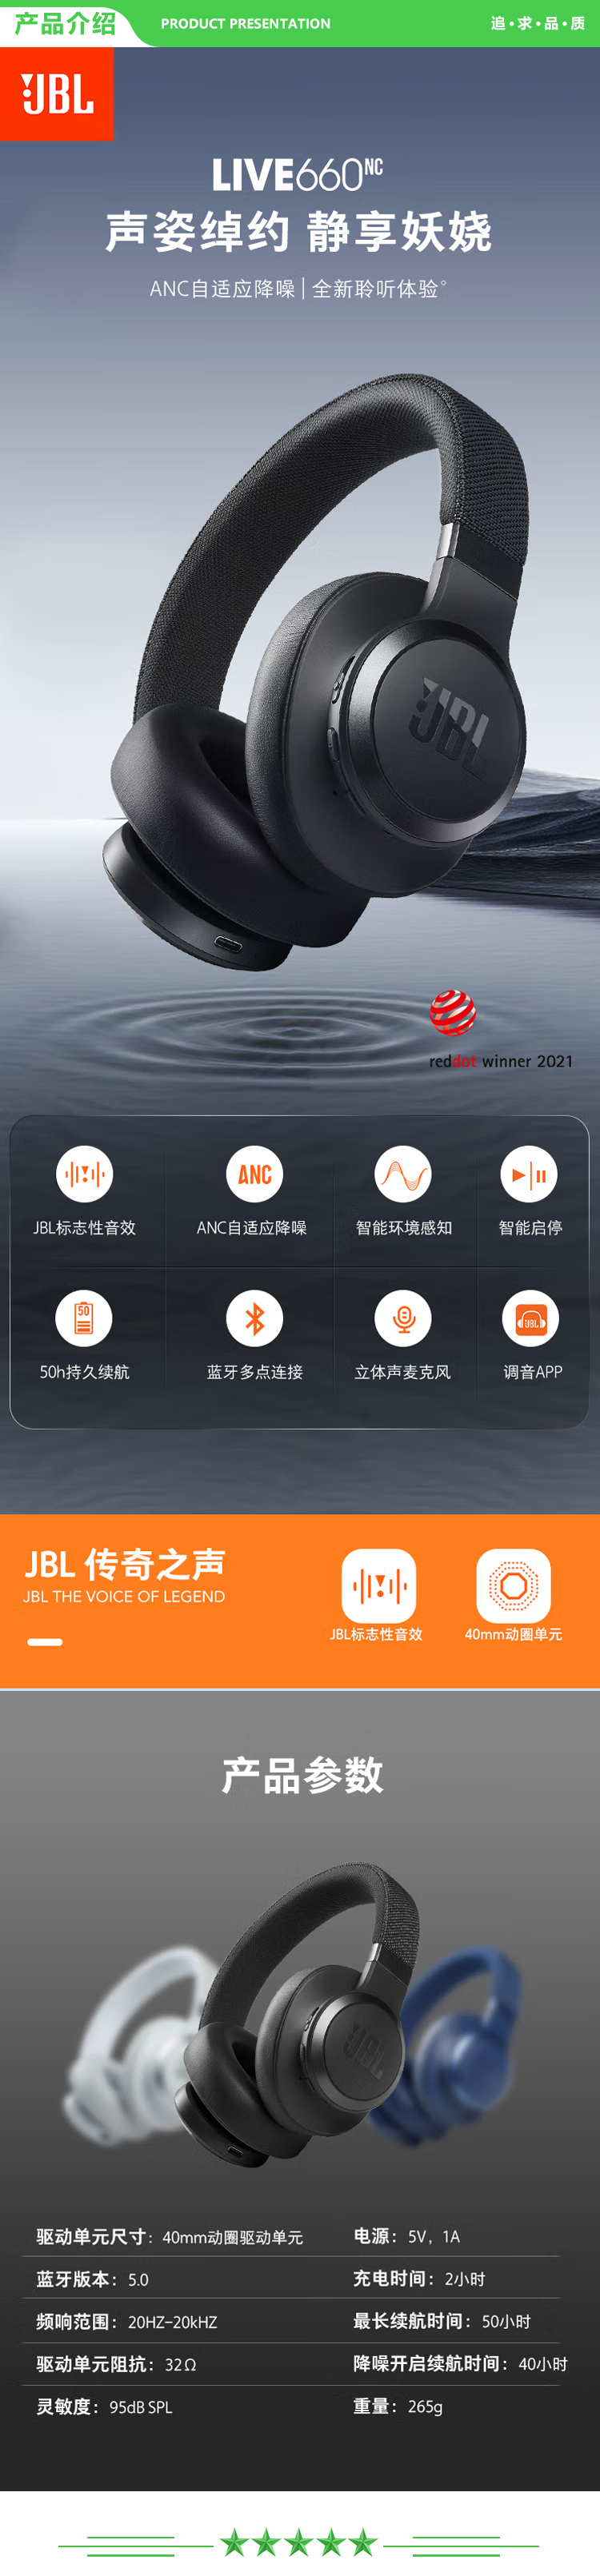 JBL LIVE660NC 自适应主动降噪蓝牙耳机 立体声通话头戴式无线耳机 苹果安卓手机通用 暗夜黑 .jpg